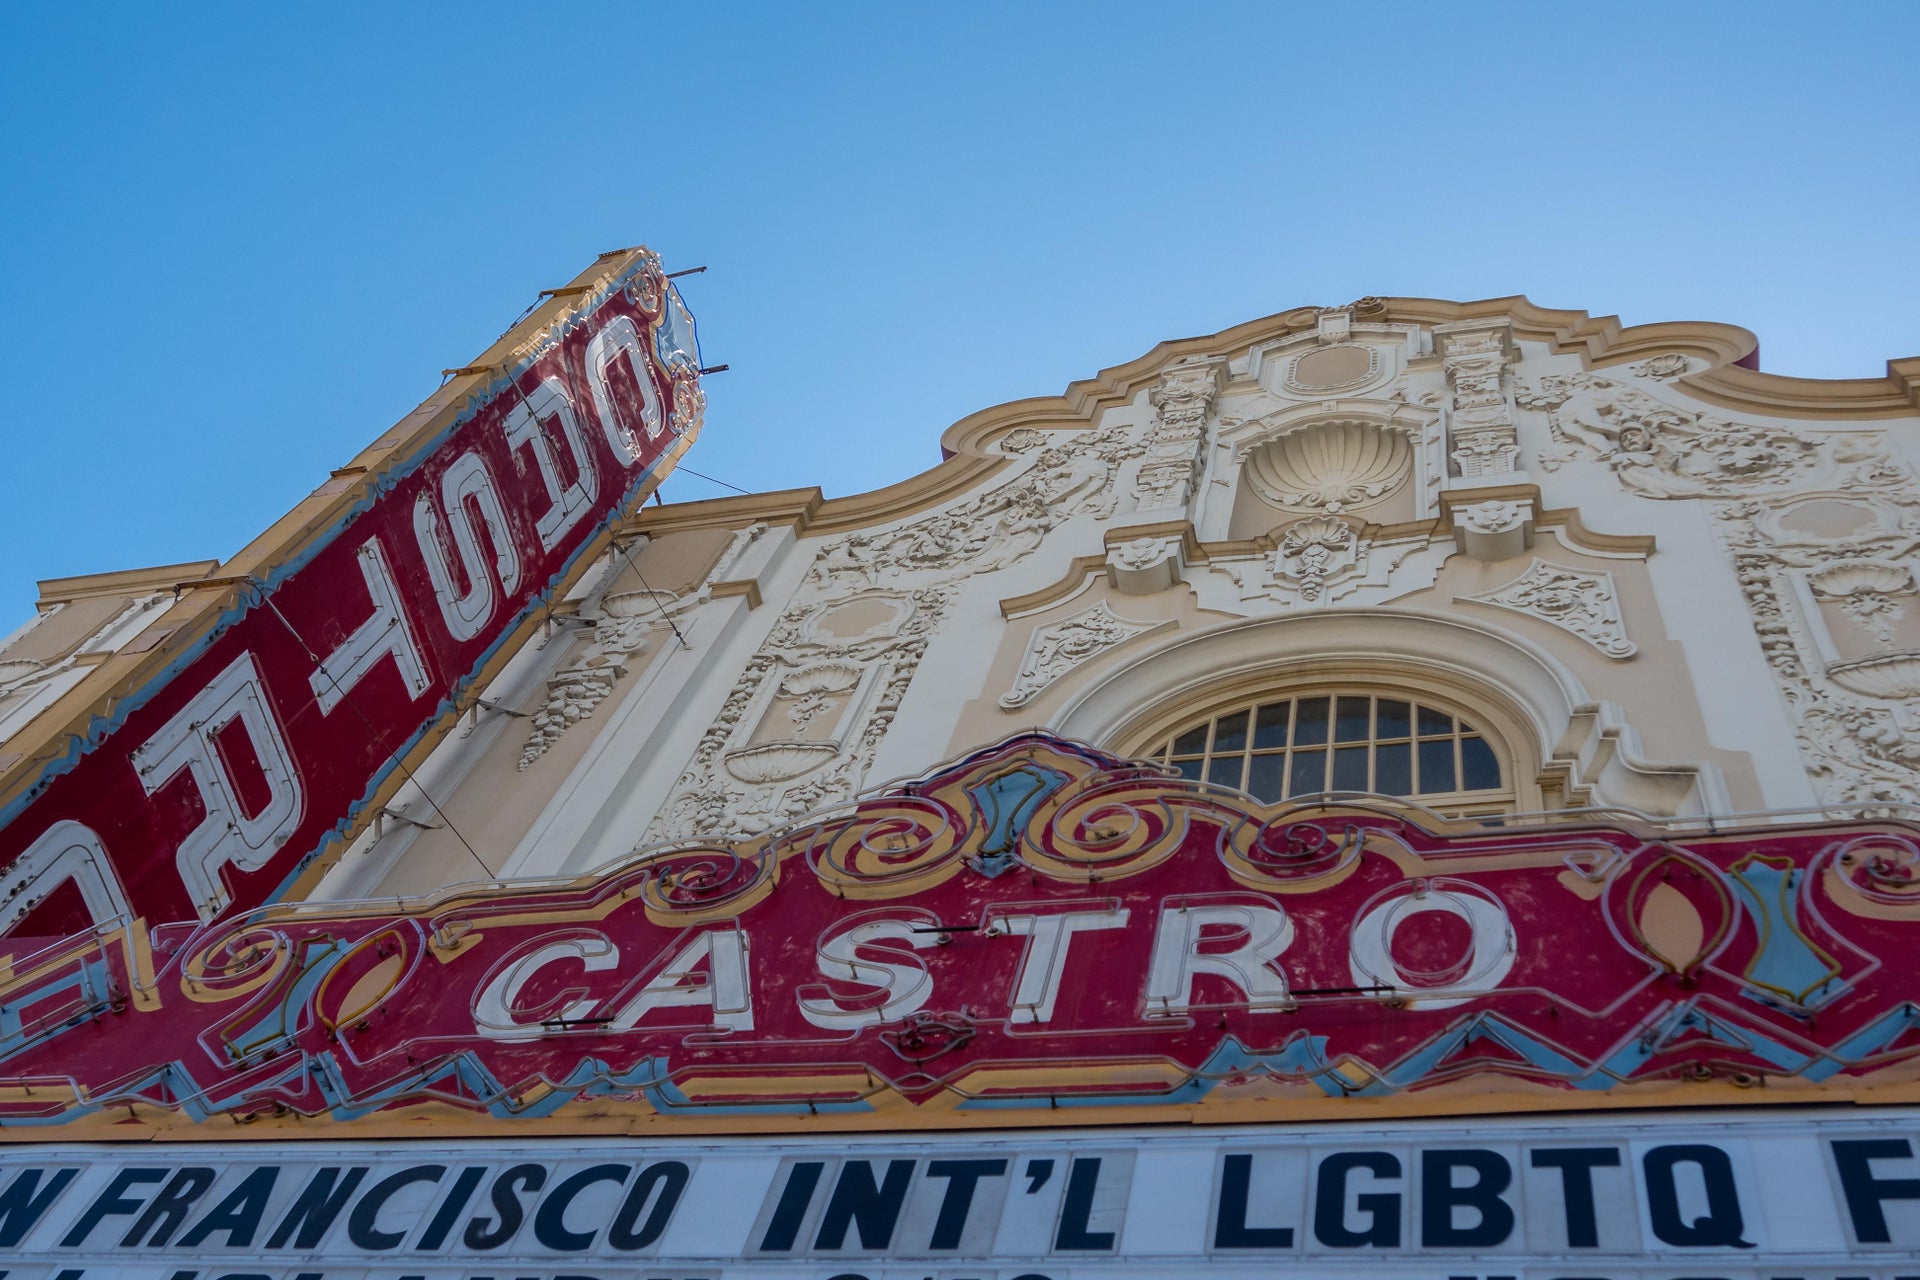 The Castro & Mission District Free Tour